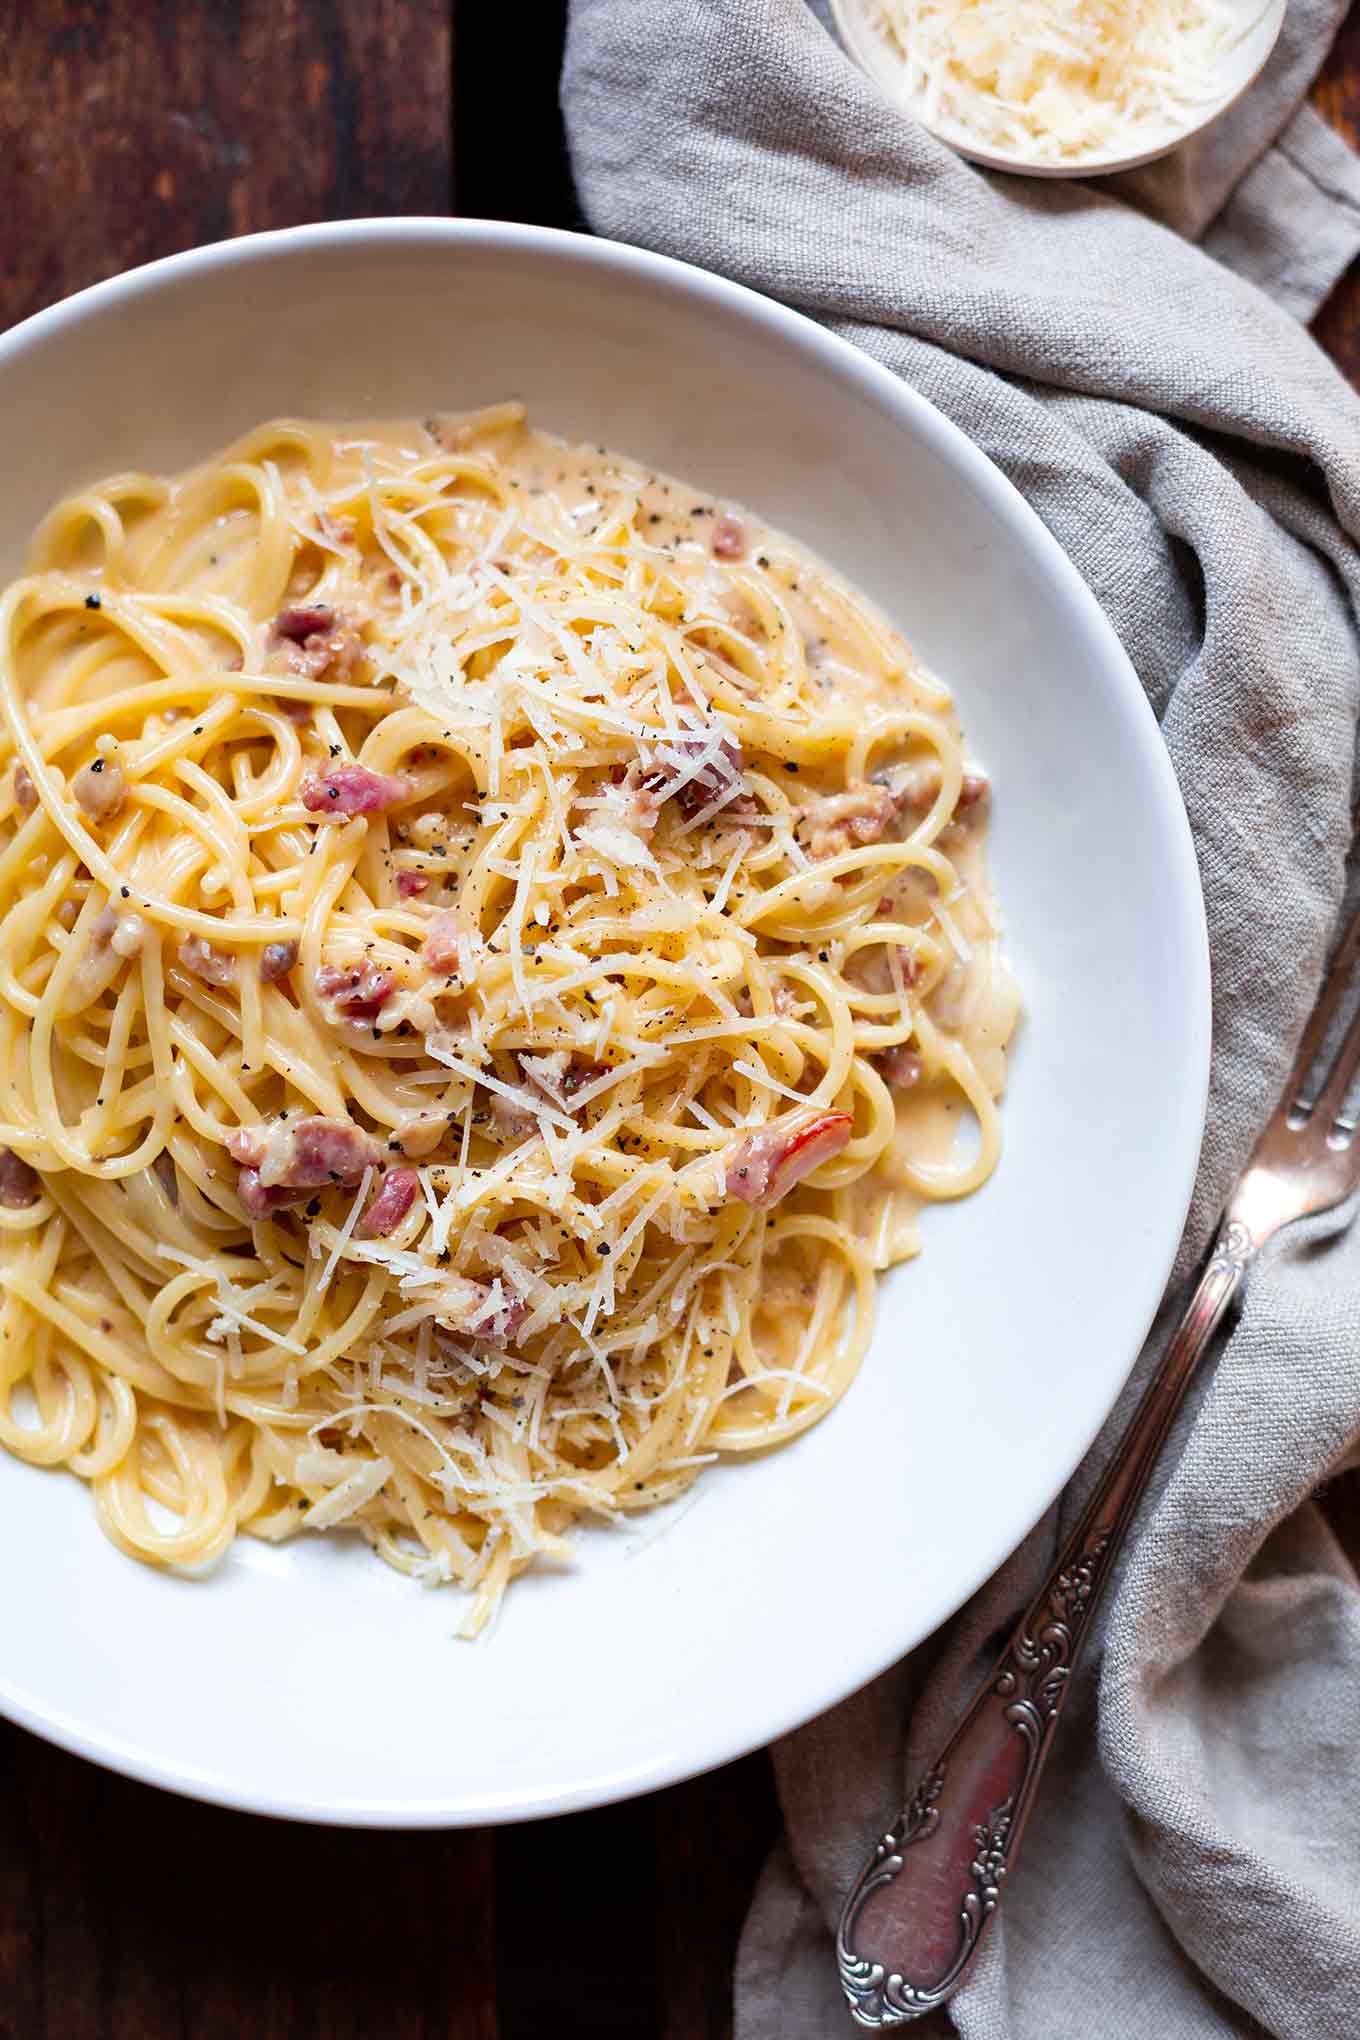 Rezept: Weltbeste Spaghetti Carbonara. Kochkarussell - dein Foodblog für schnelle und einfache Feierabendküche!